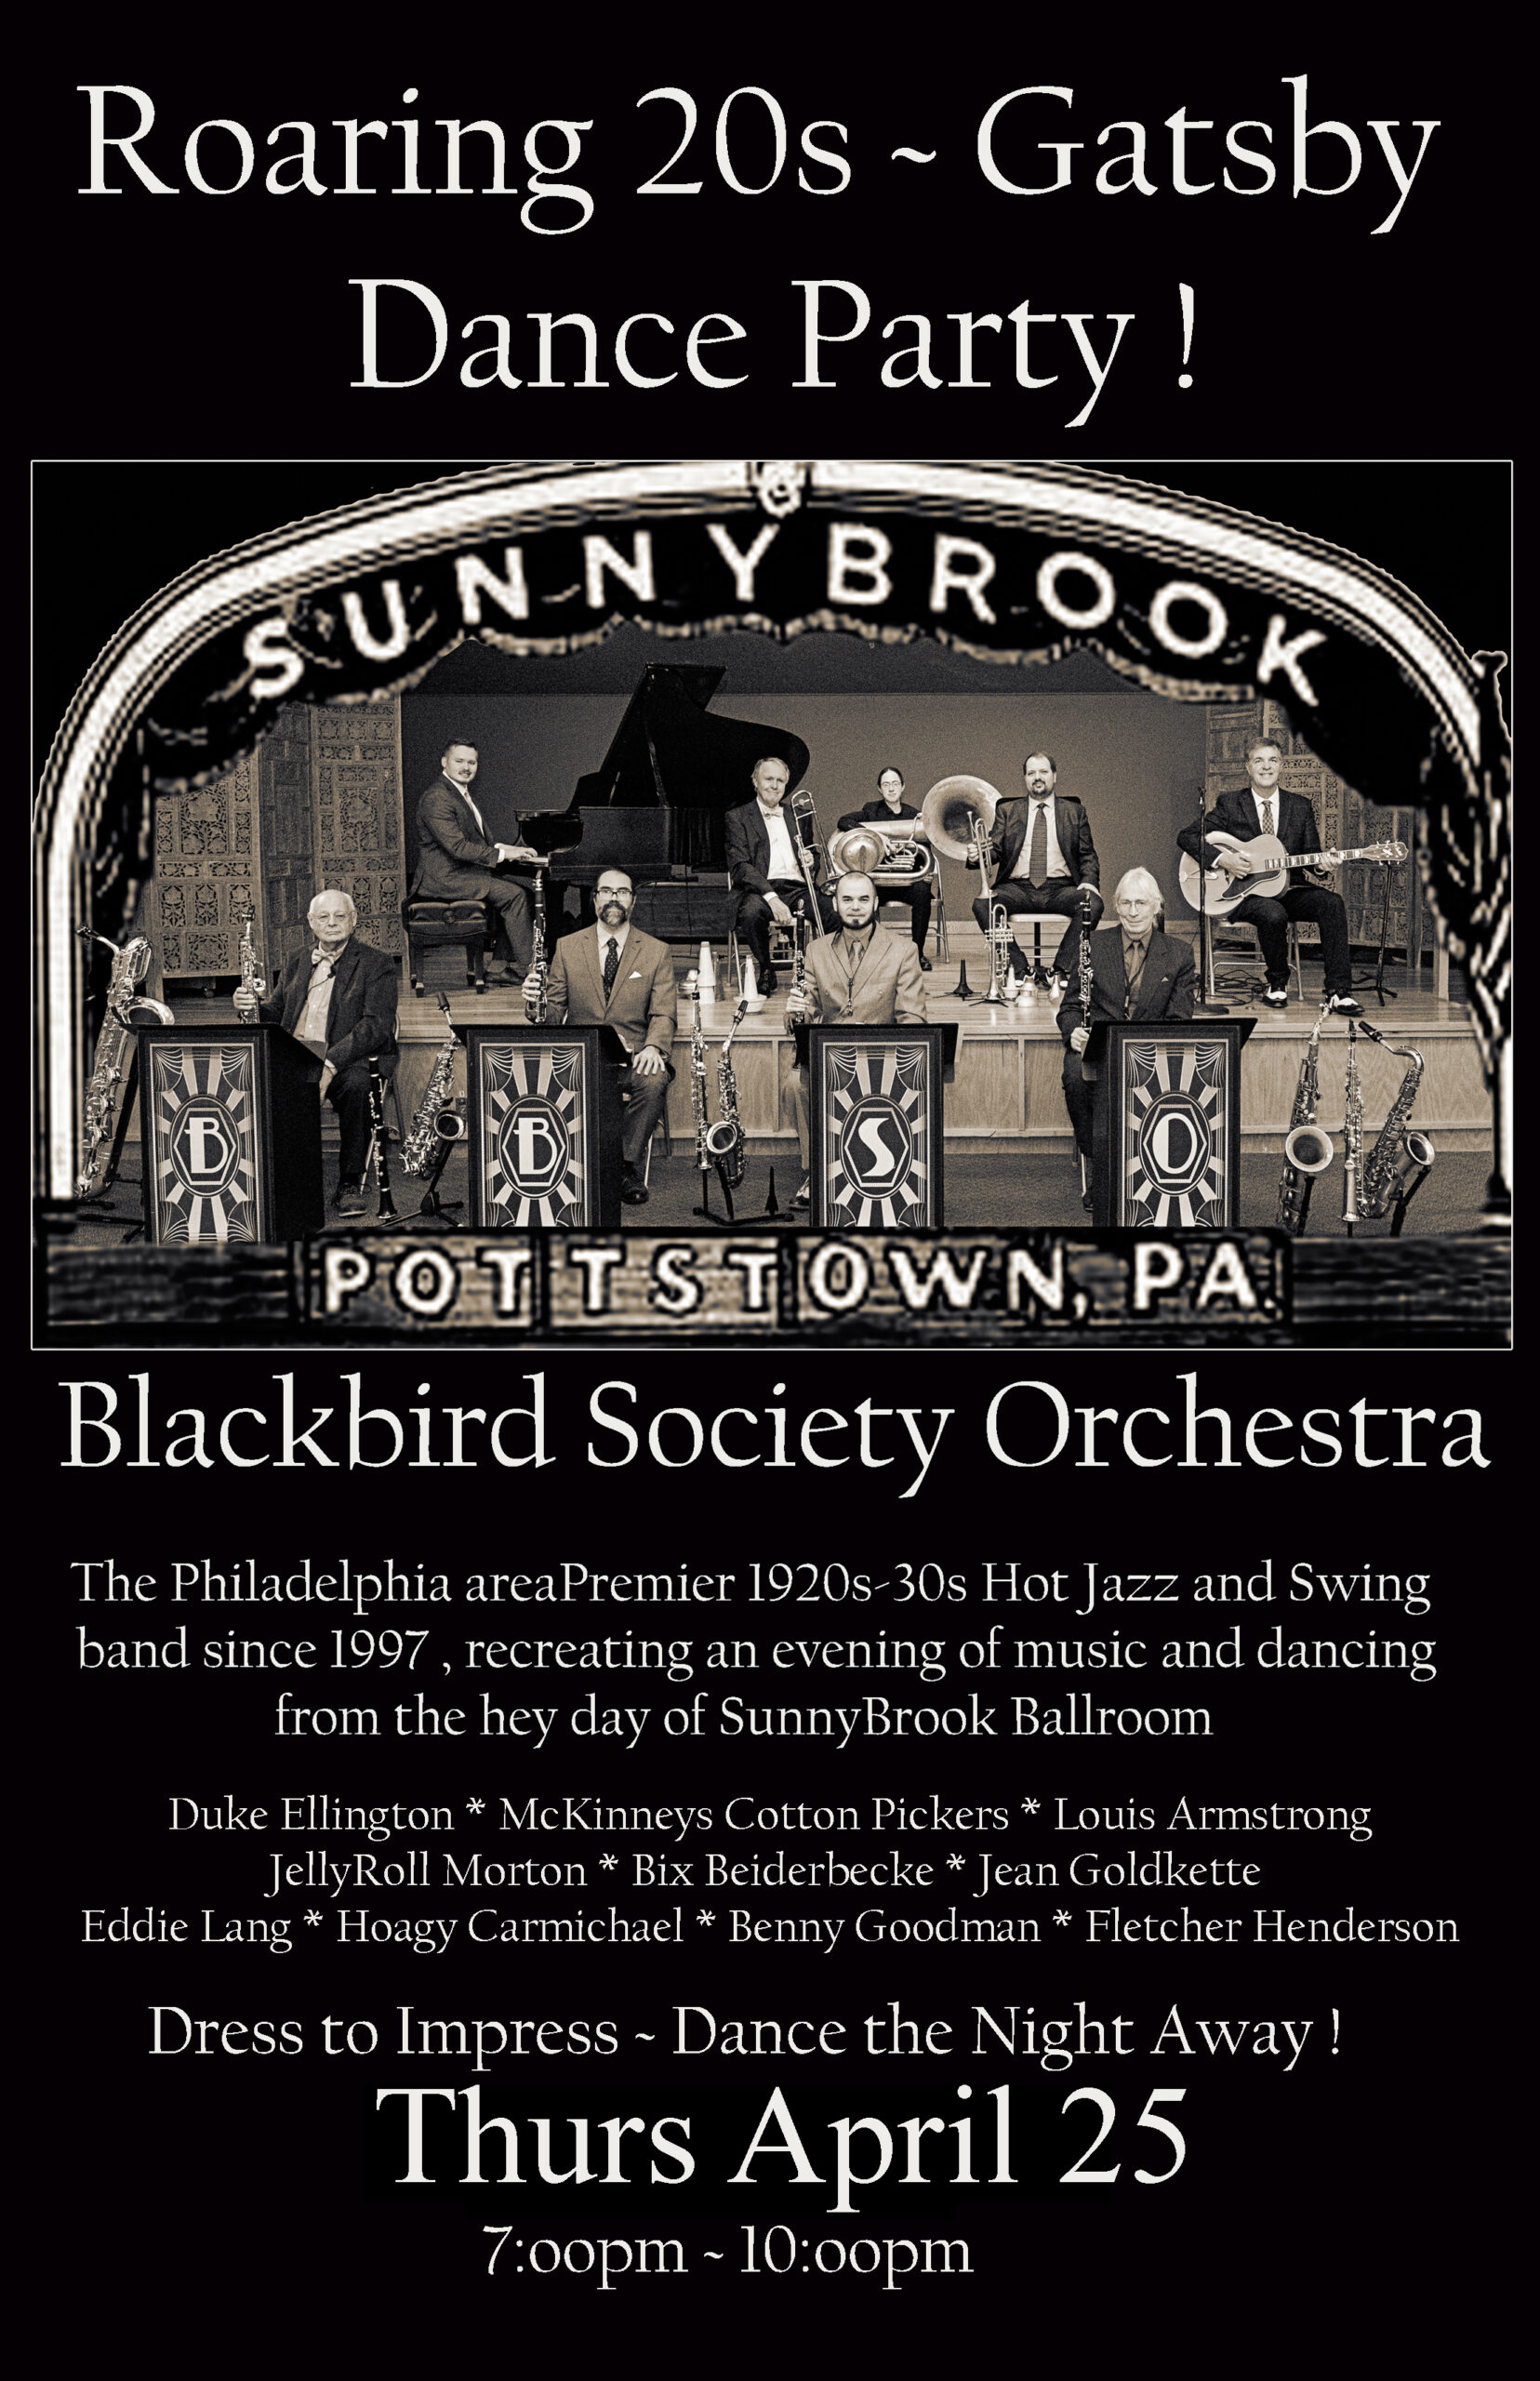 Blackbird Society Orchestra